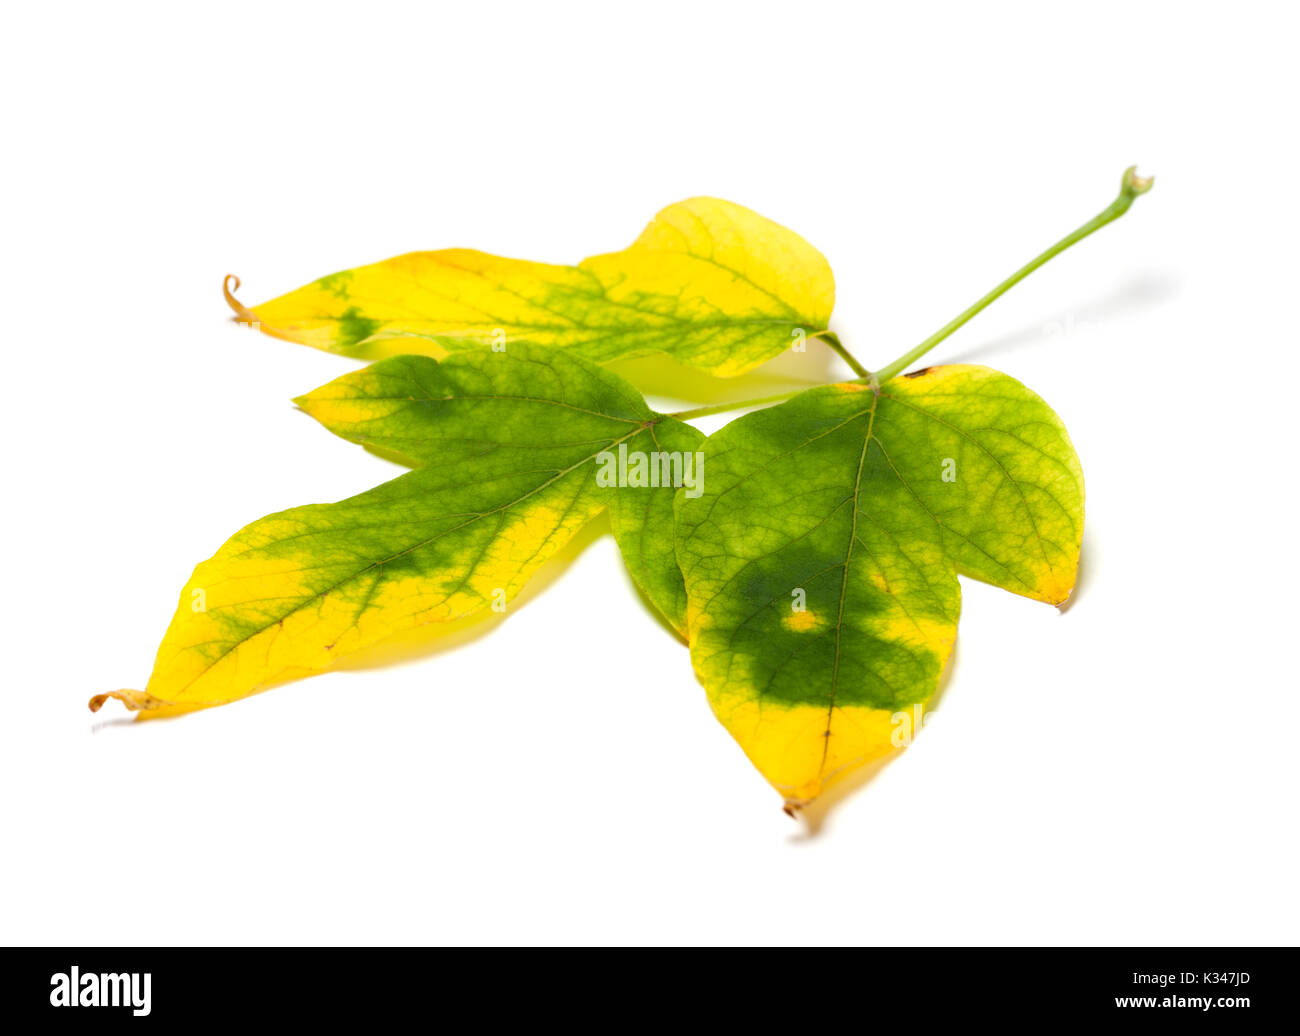 Automne feuilles jaunies maple, Acer negundo. Isolé sur fond blanc. Banque D'Images